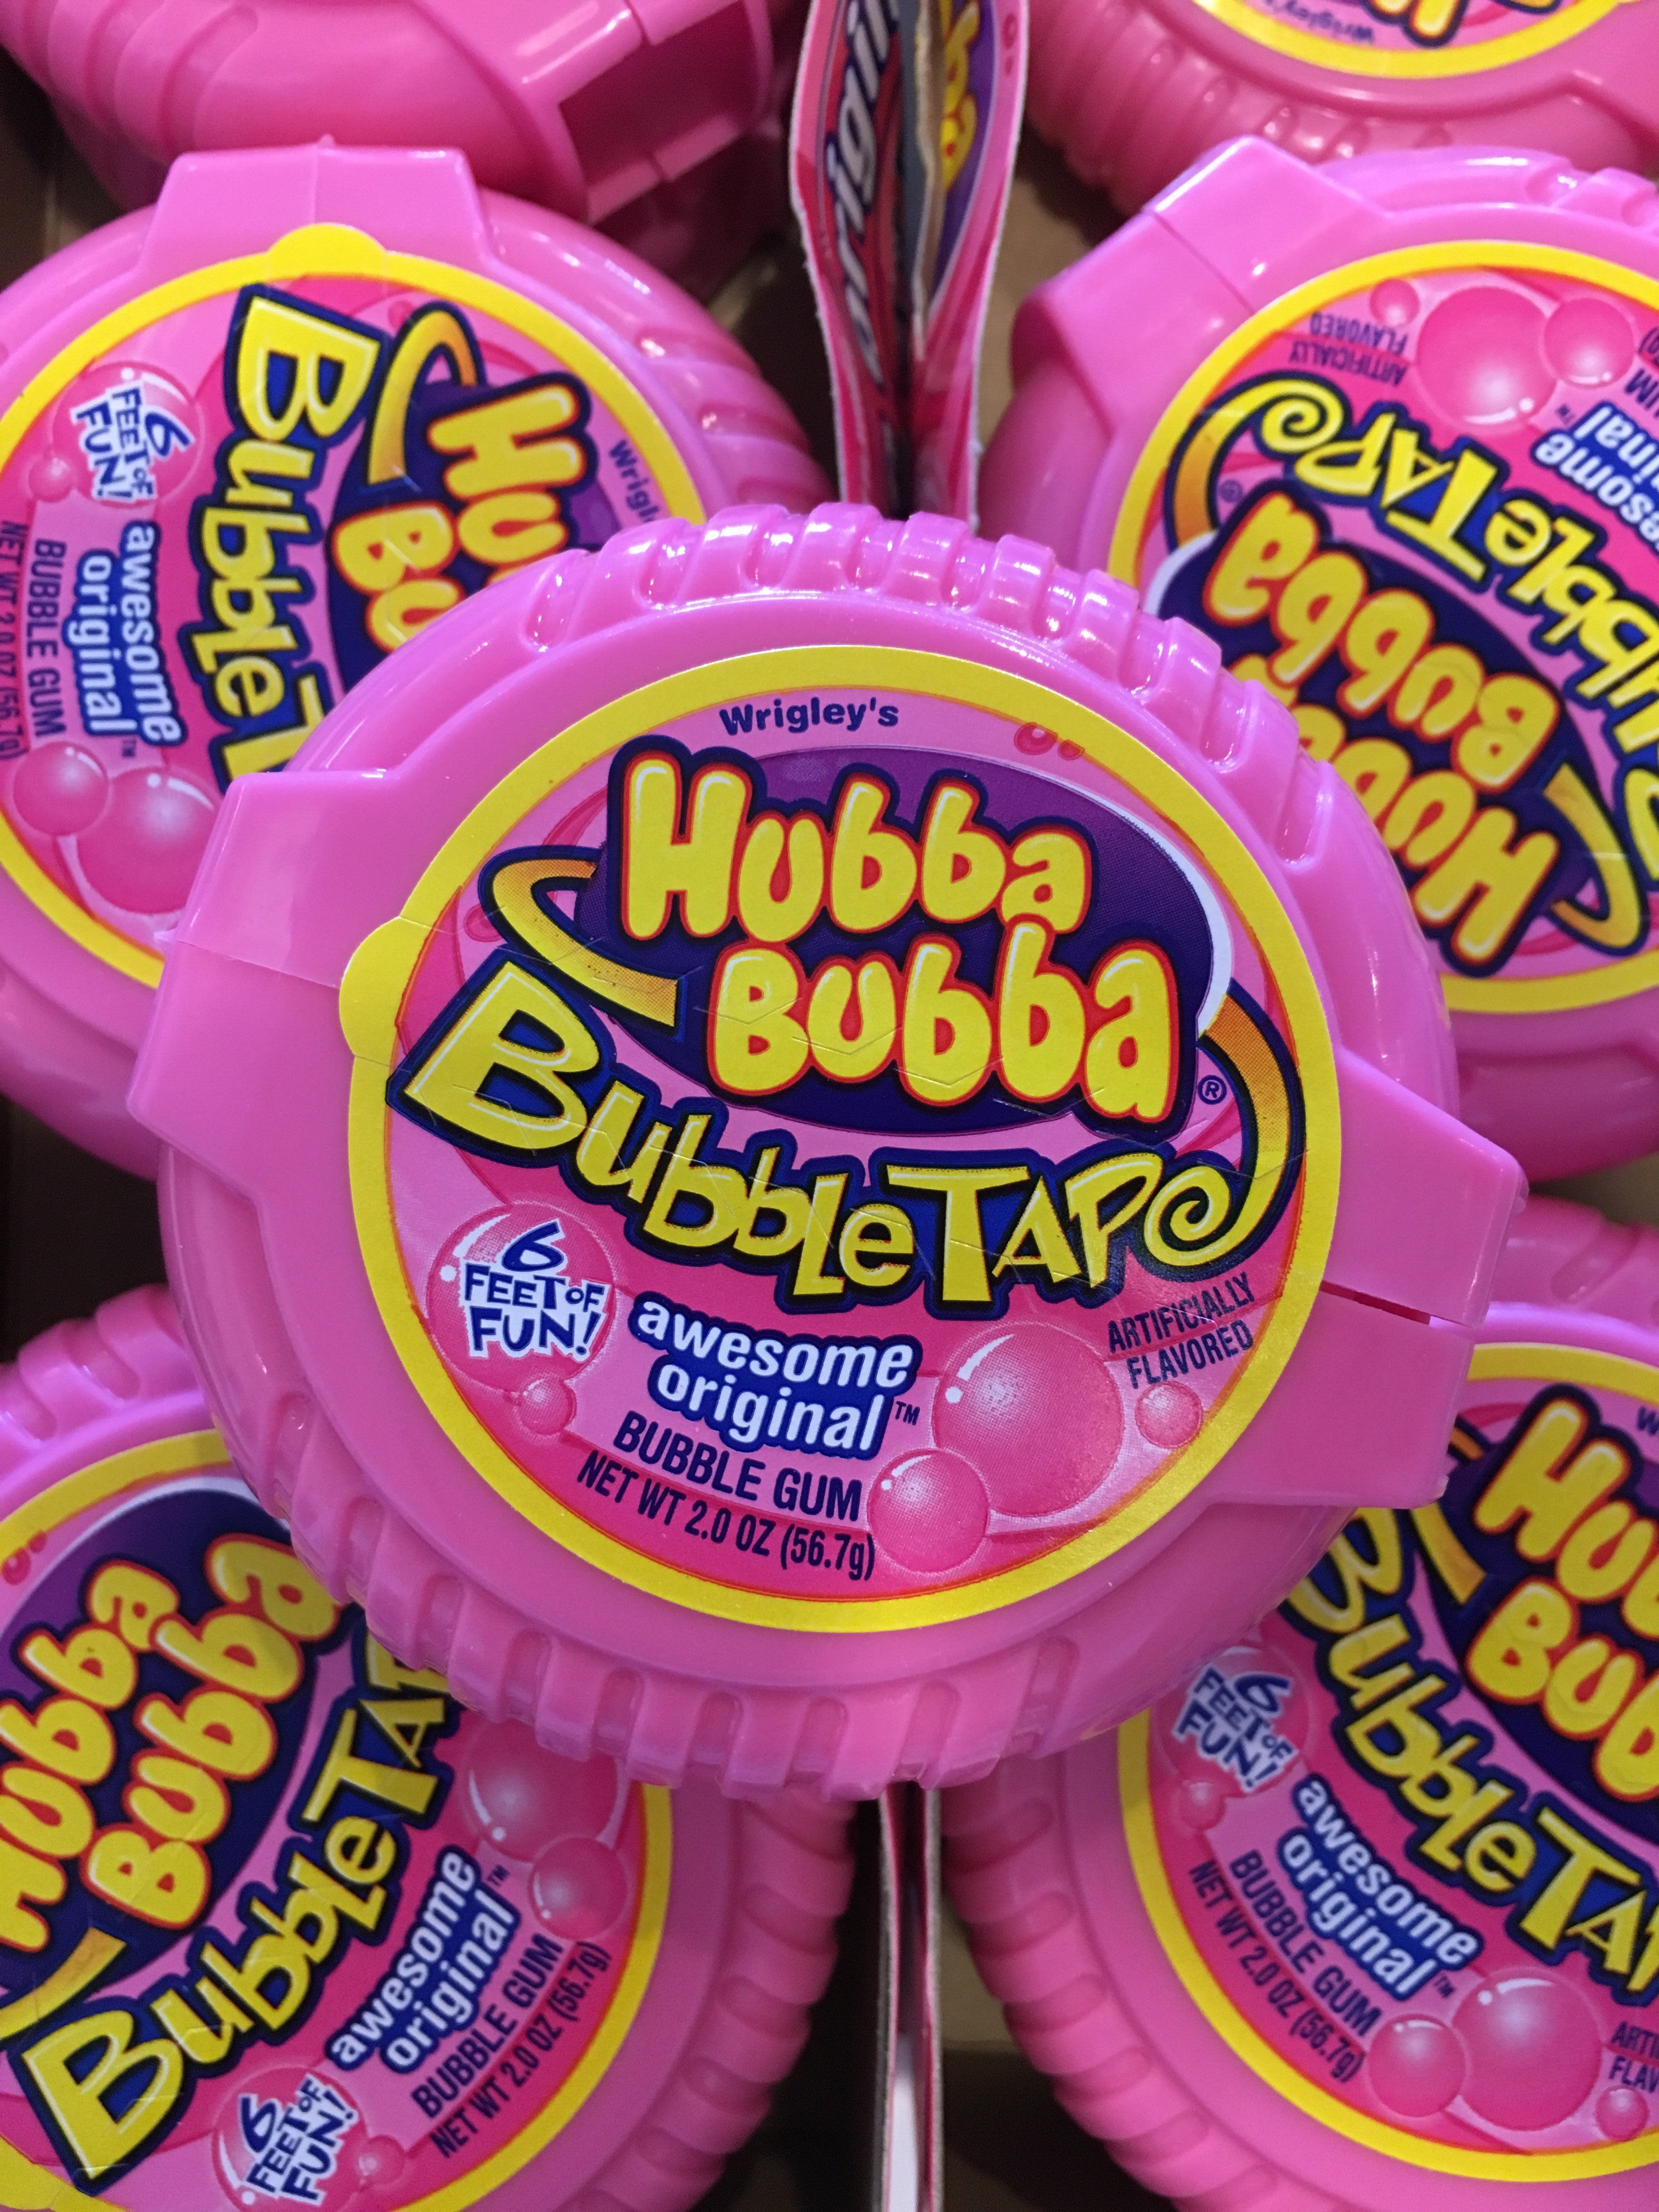 Hubba Bubba Bubble Tape Original – Mom's Sweet Shop